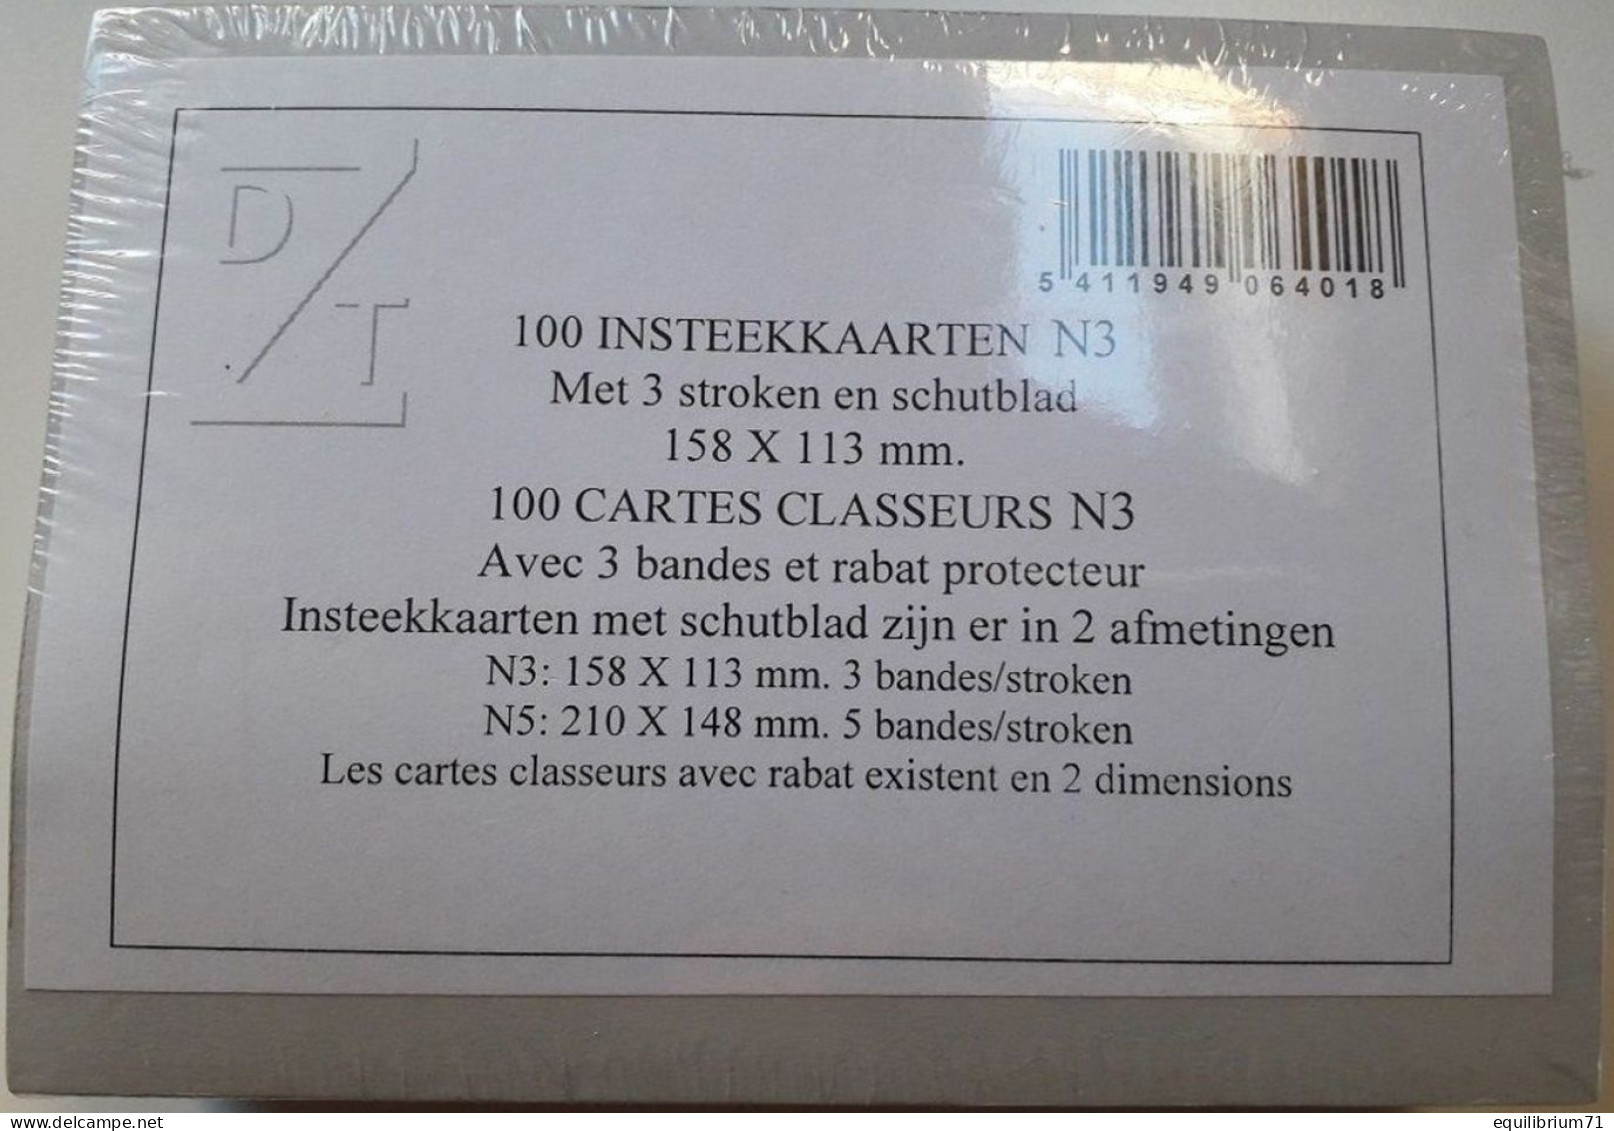 100 Cartes Classeurs / Insteekkaarten / Karten Einlegen / Insert Cards - DZT N3 - Stock Sheets